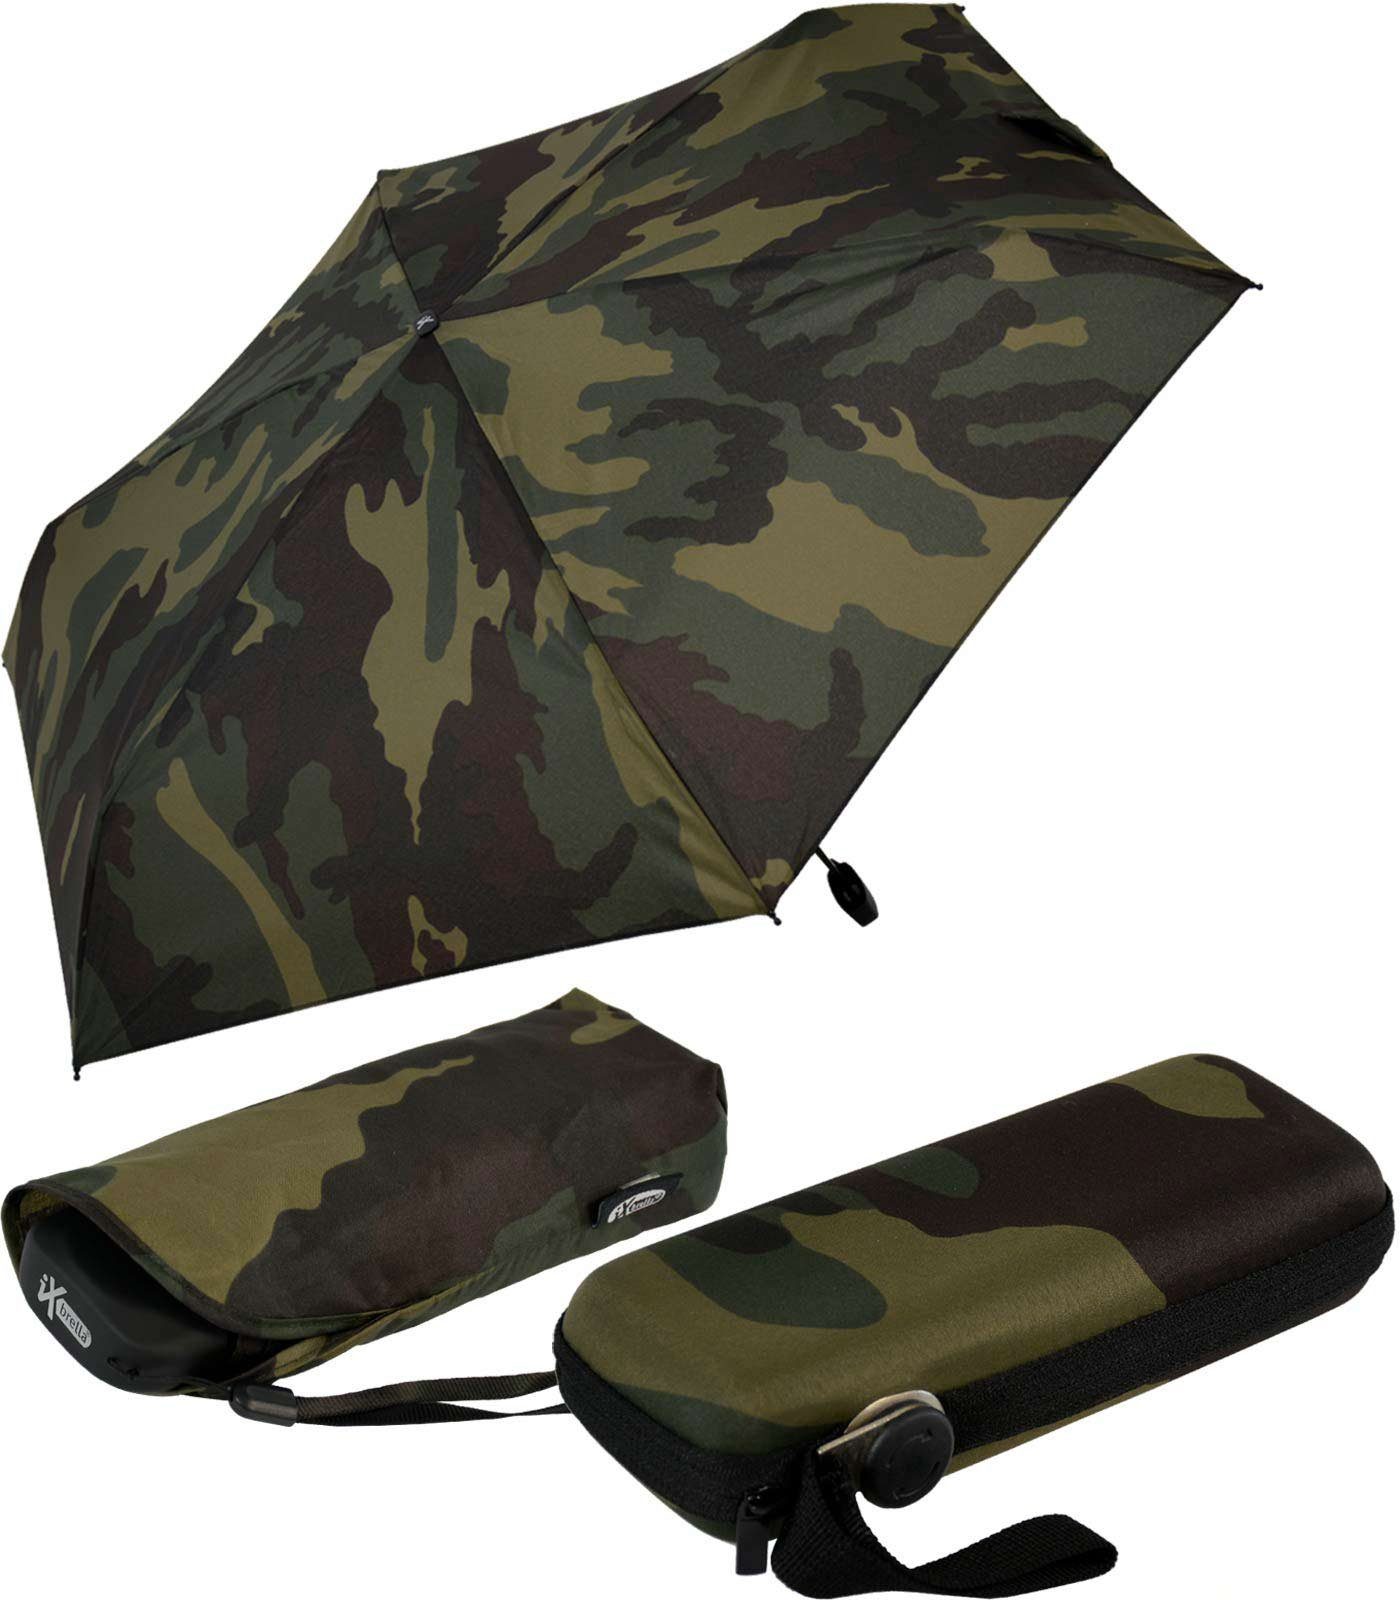 iX-brella Taschenregenschirm Super Mini Schirm mit großem Dach 94cm - Camouflage, super-mini olive